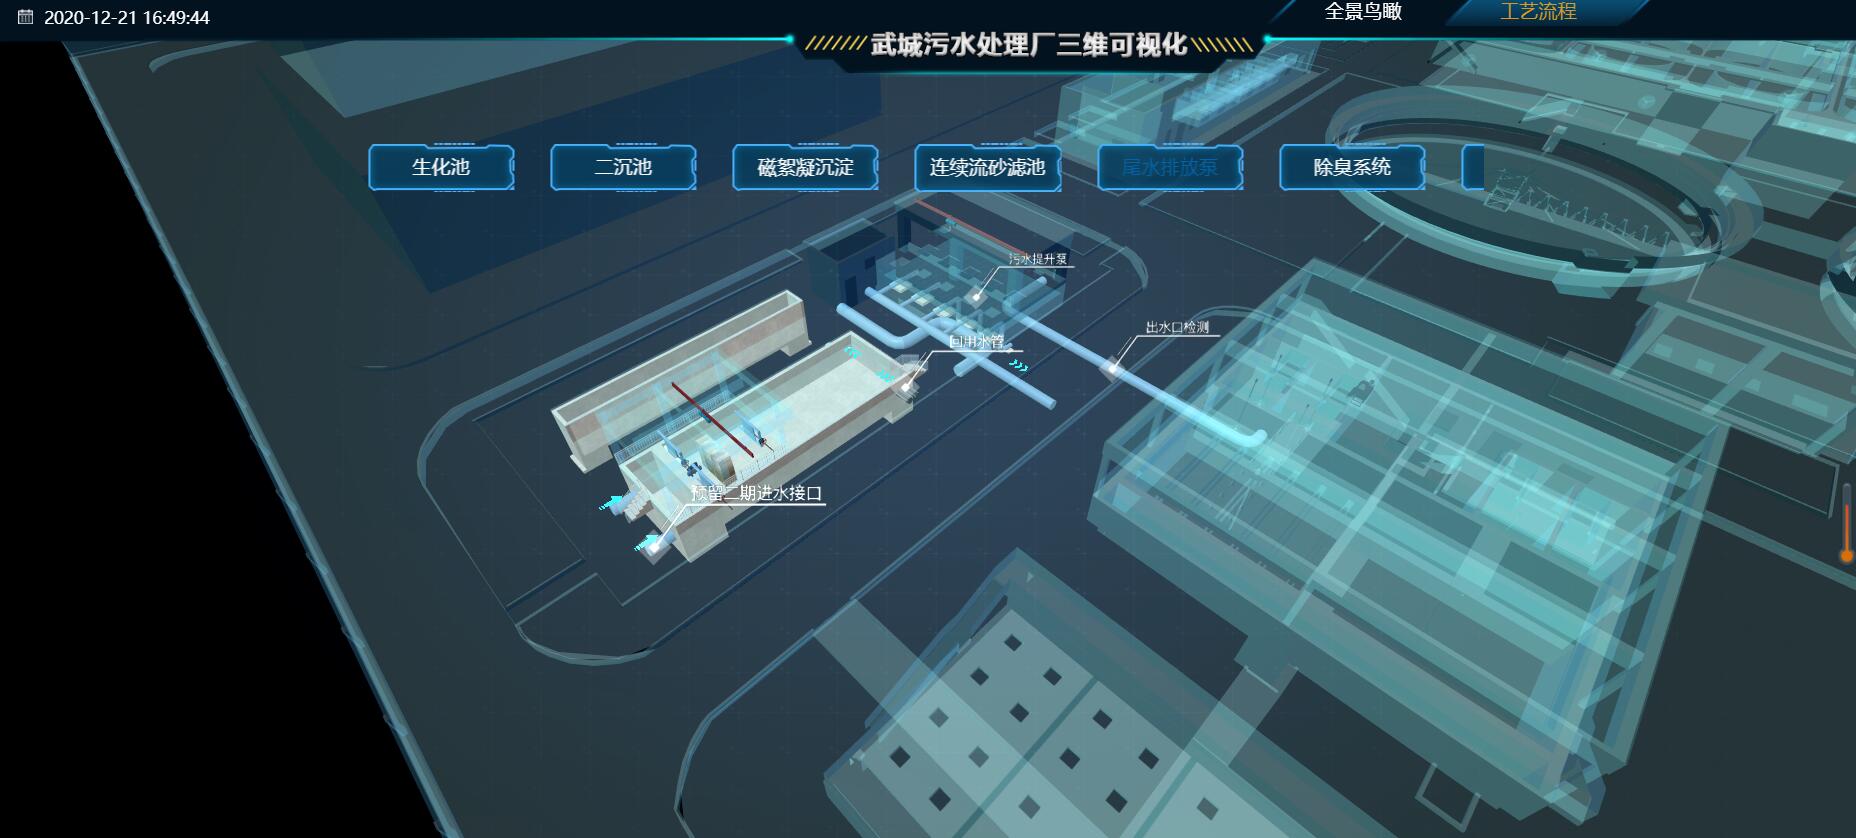 三維工業仿真 北京水廠vr虛擬現實展示系統